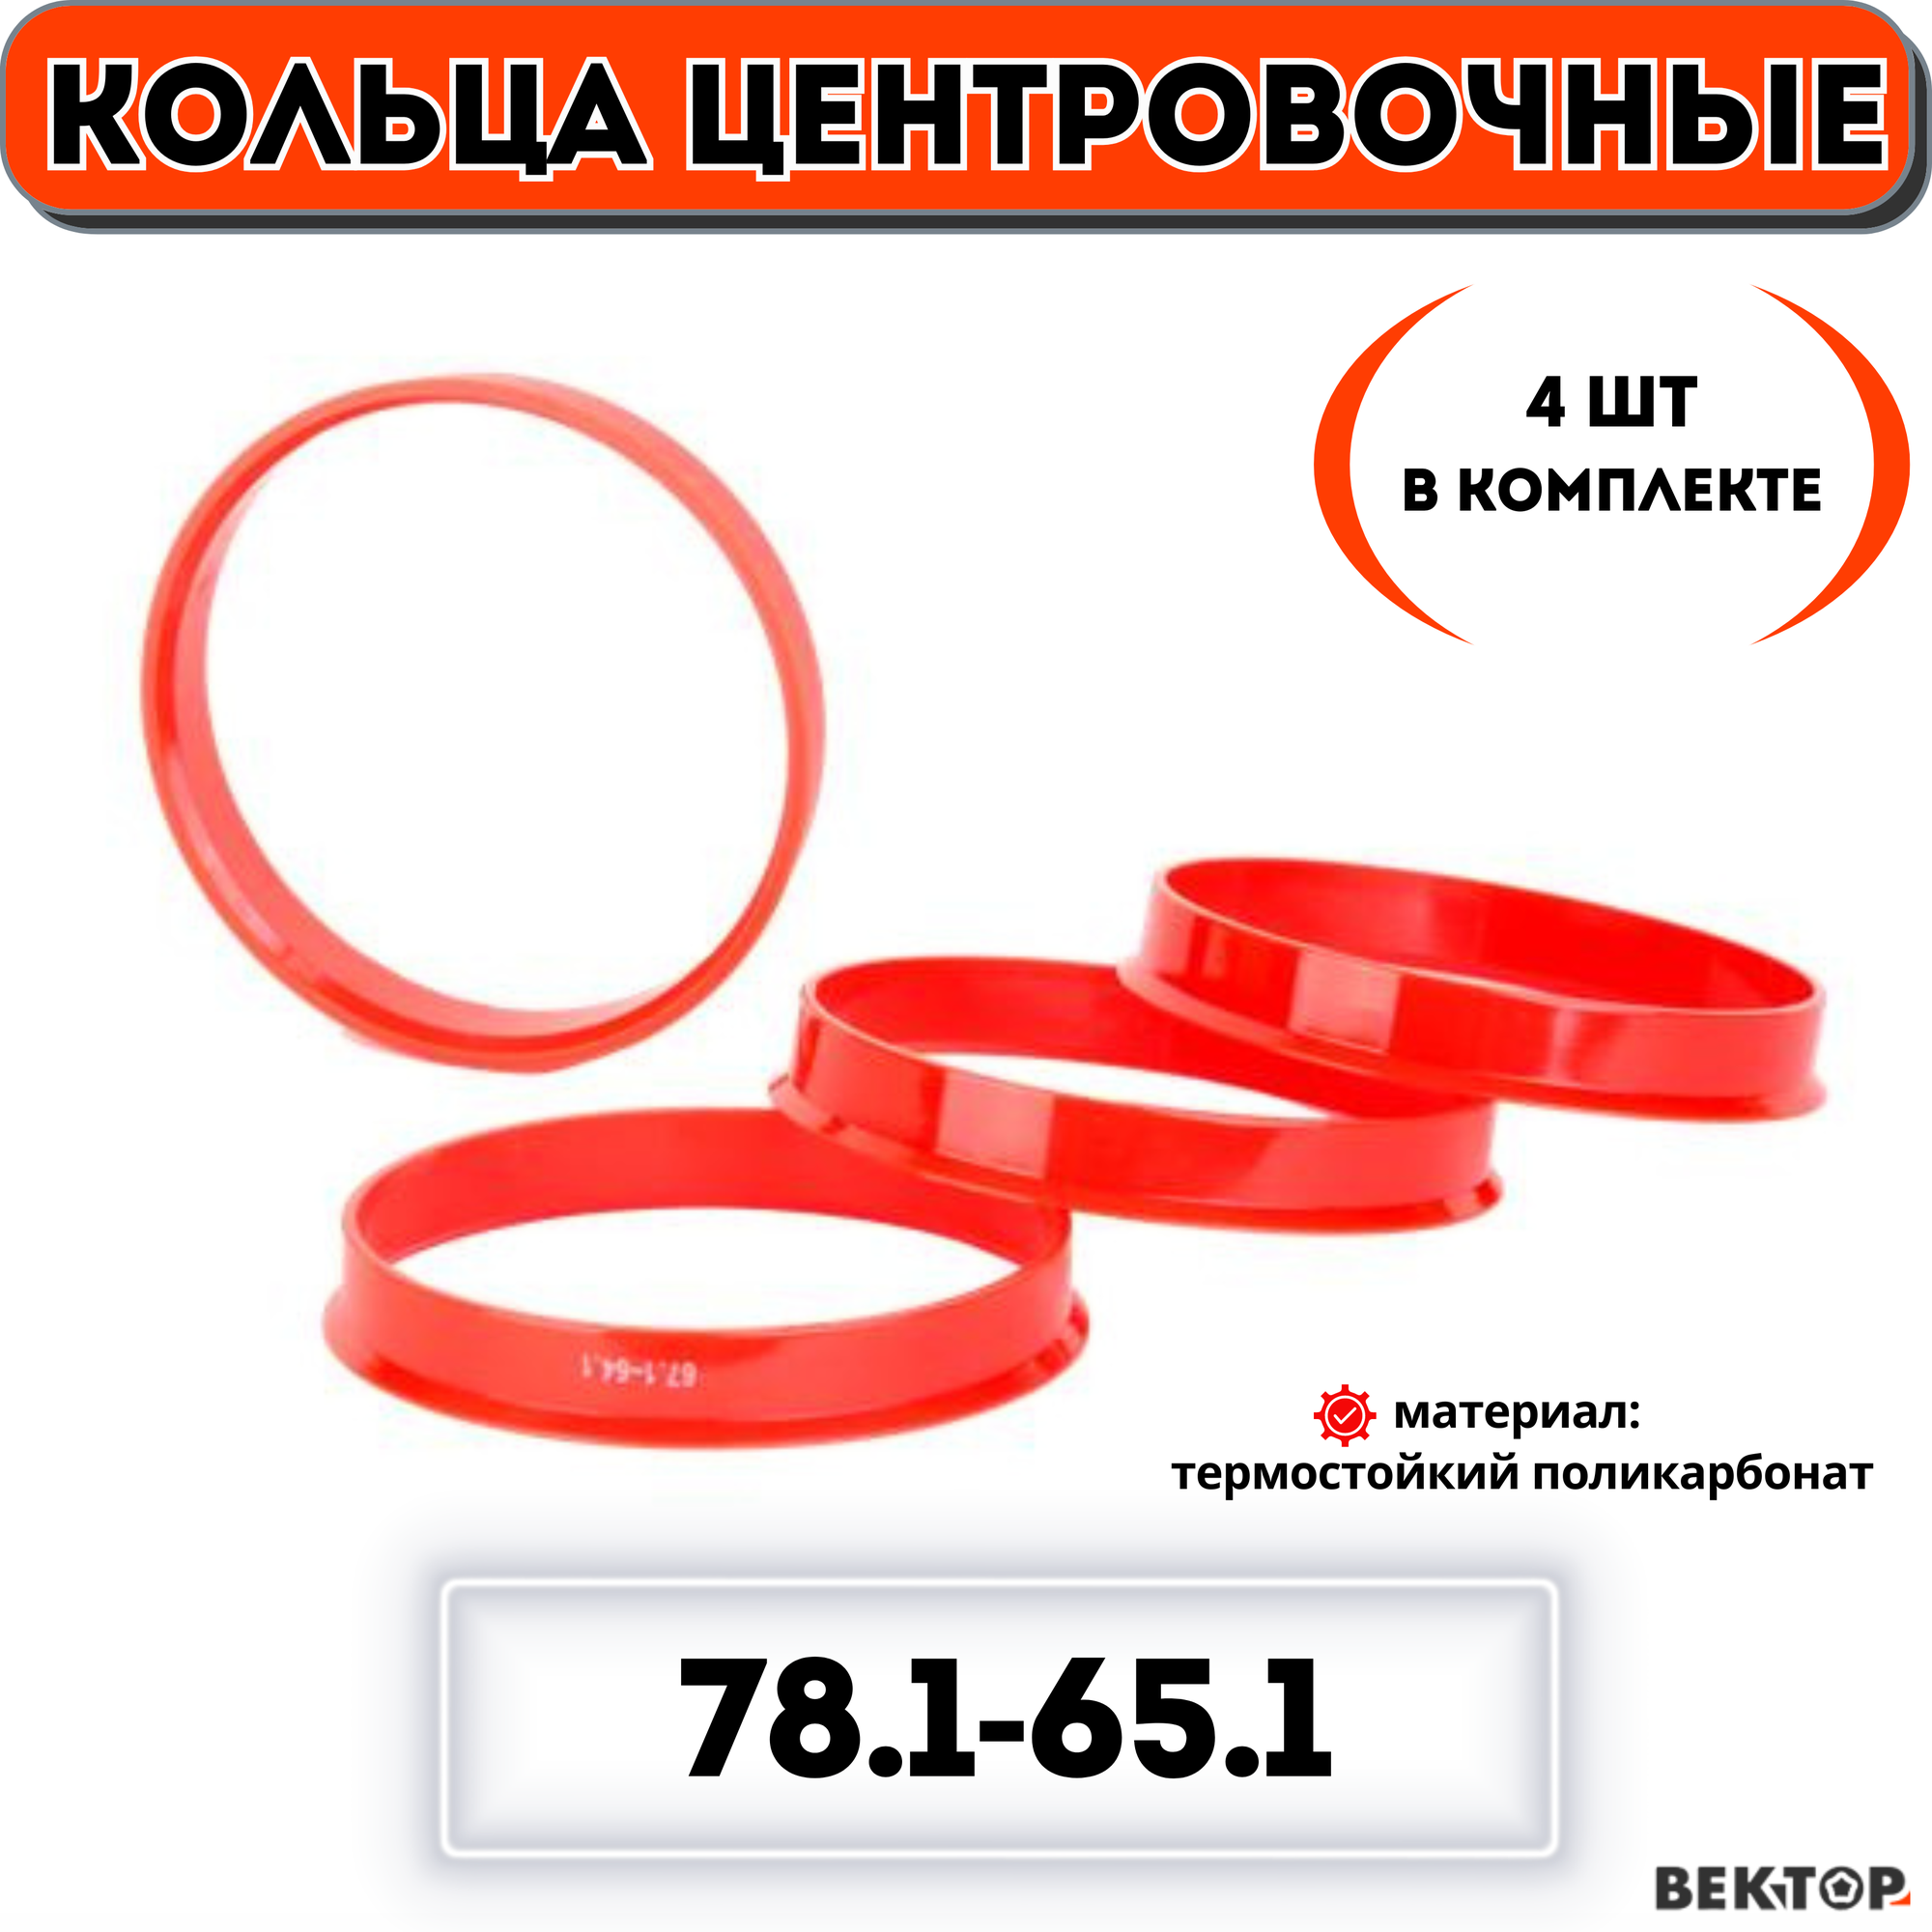 Центровочные кольца для автомобильных дисков 78,1-65,1 "вектор" (комплект 4 шт.)